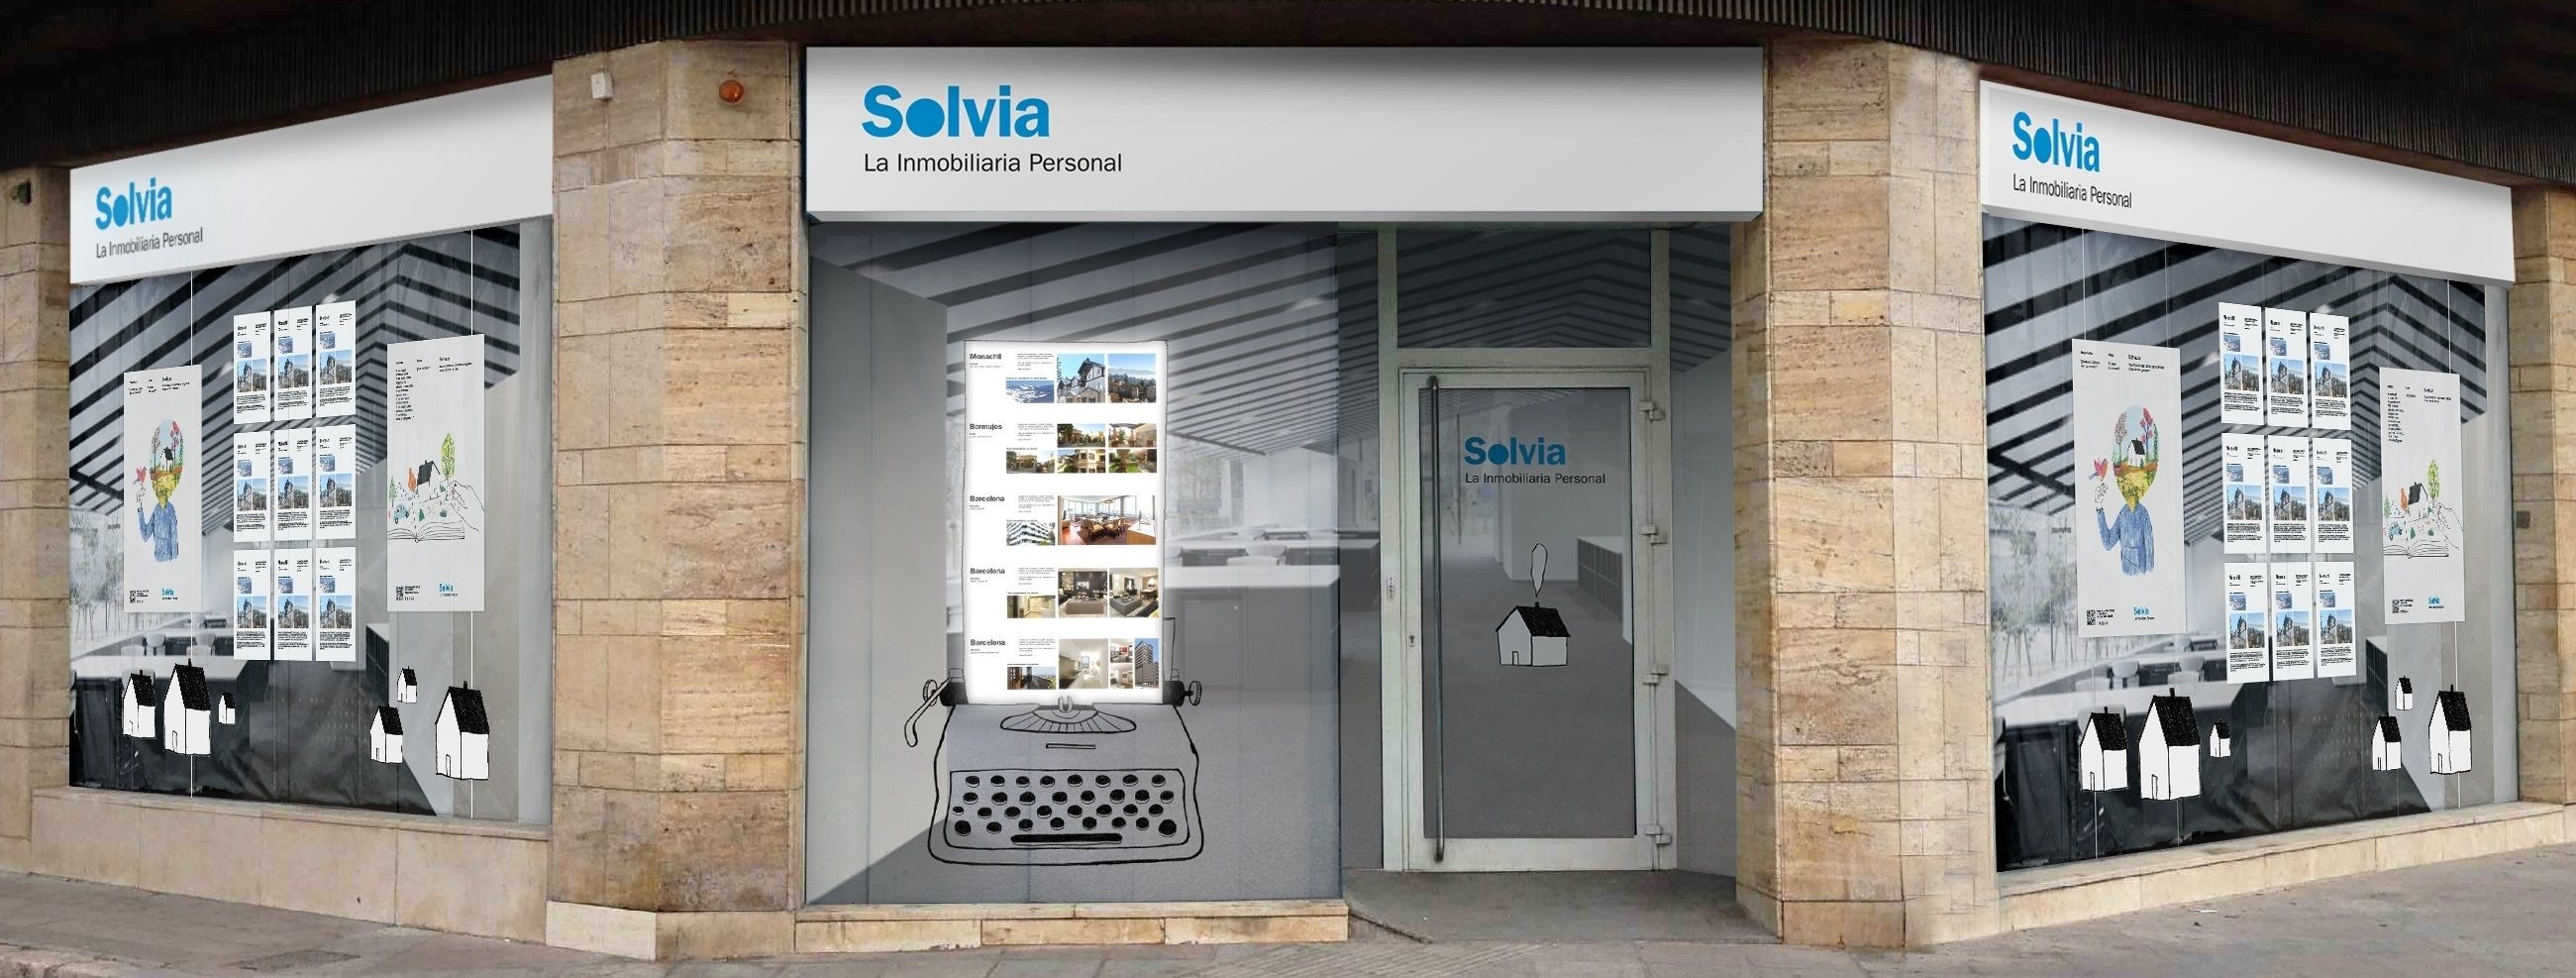 Solvia lanza una oferta con 1.800 viviendas rebajadas a partir de 20.900 euros